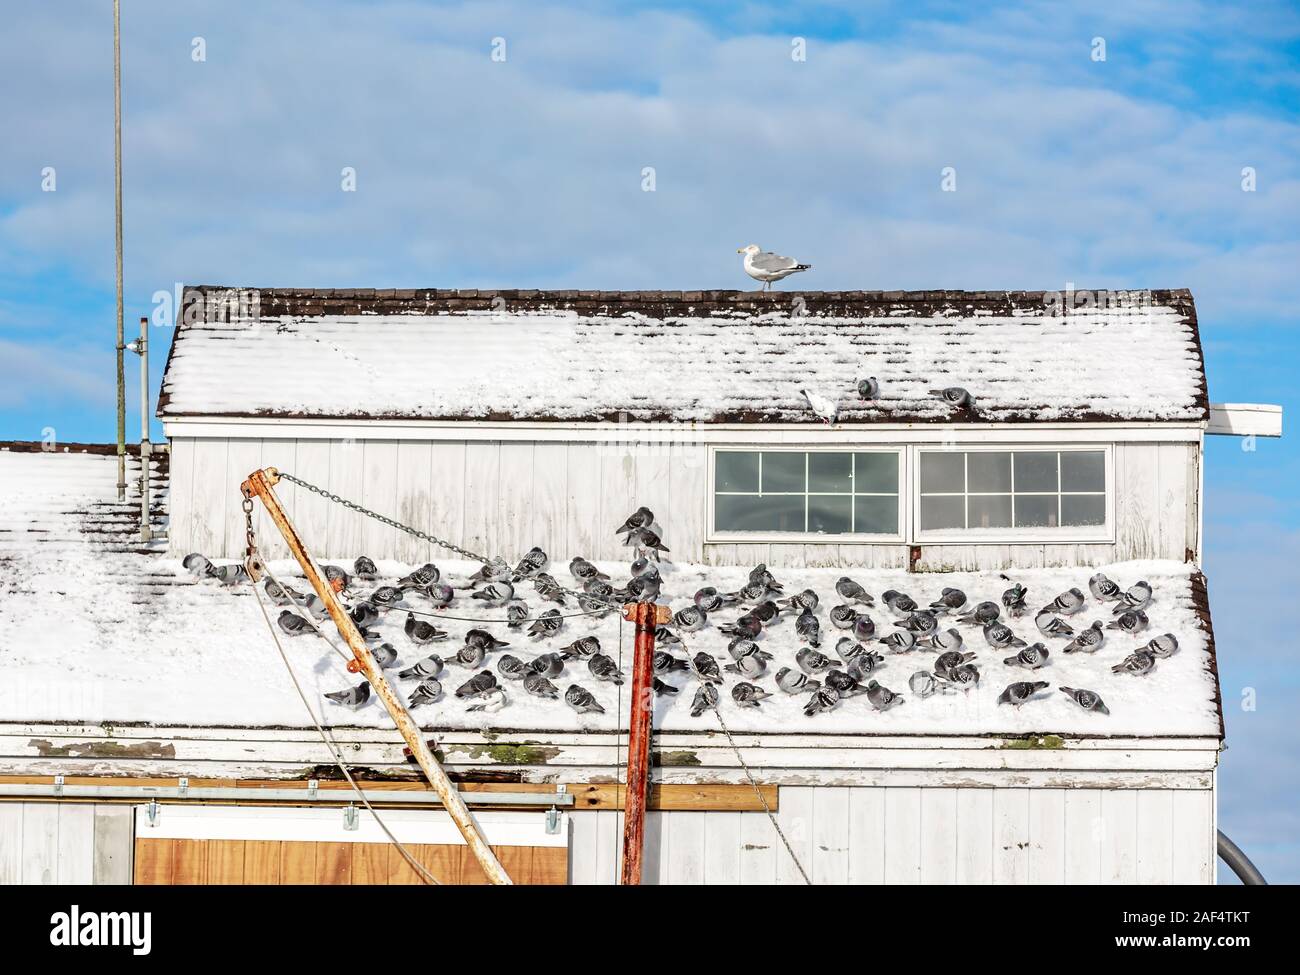 La prise de refuge d'oiseaux du froid sur un bâtiment à Montauk, NY Banque D'Images